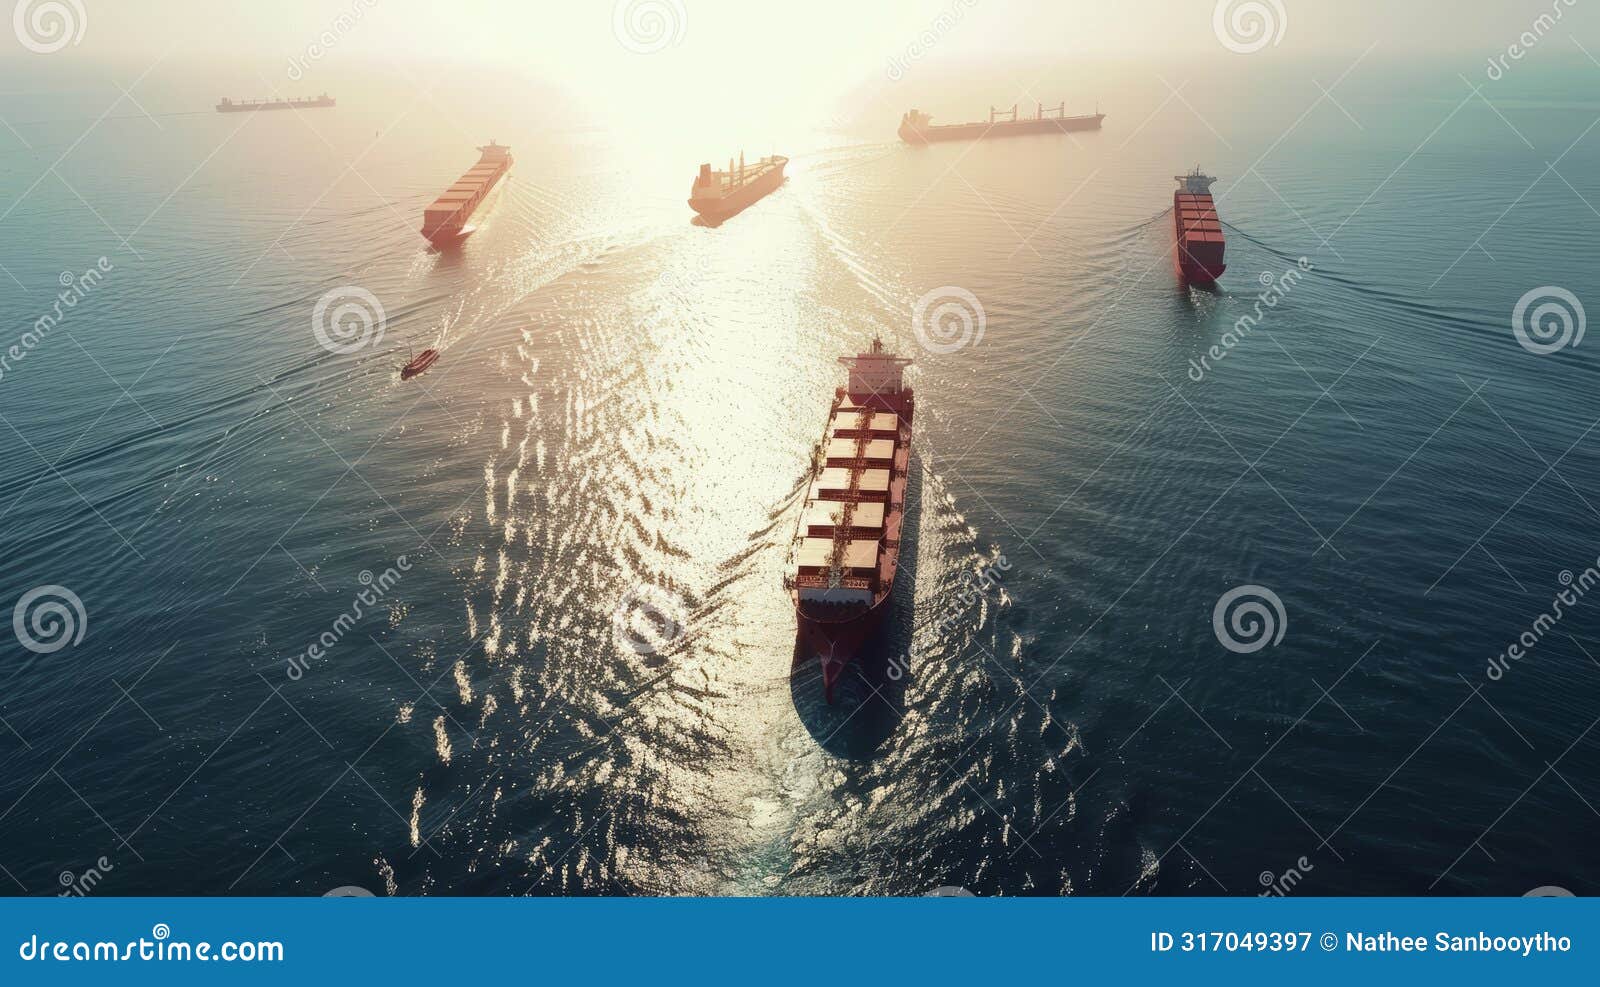 cargo ships converging in sunlit ocean pathways